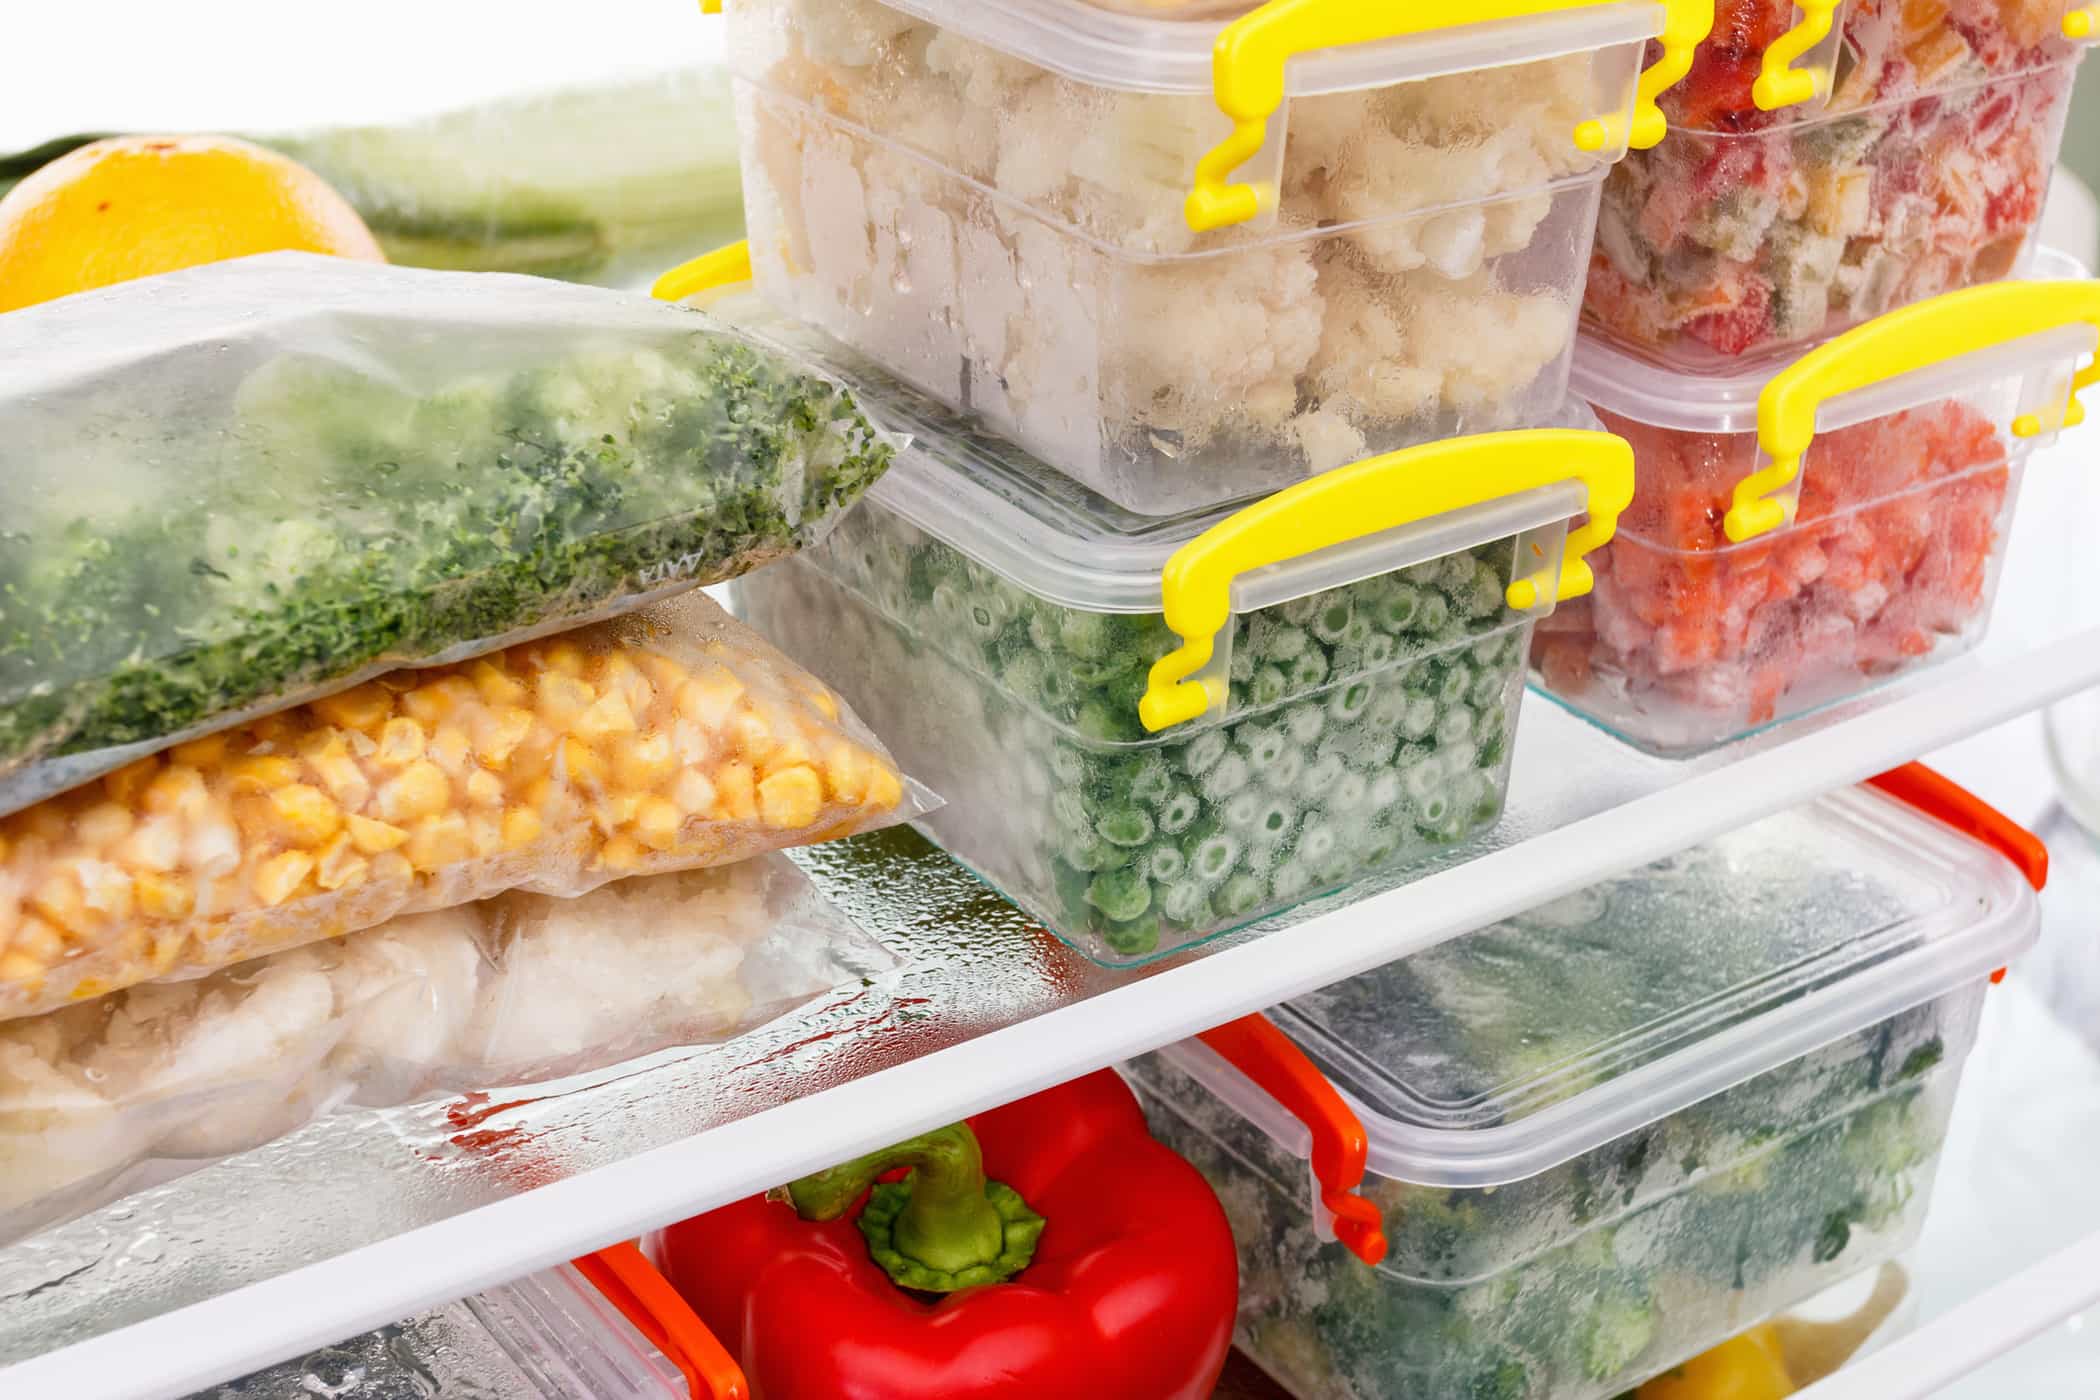 Les contenants en plastique pour vos aliments sont-ils sûrs ? Découvrez grâce à ce code